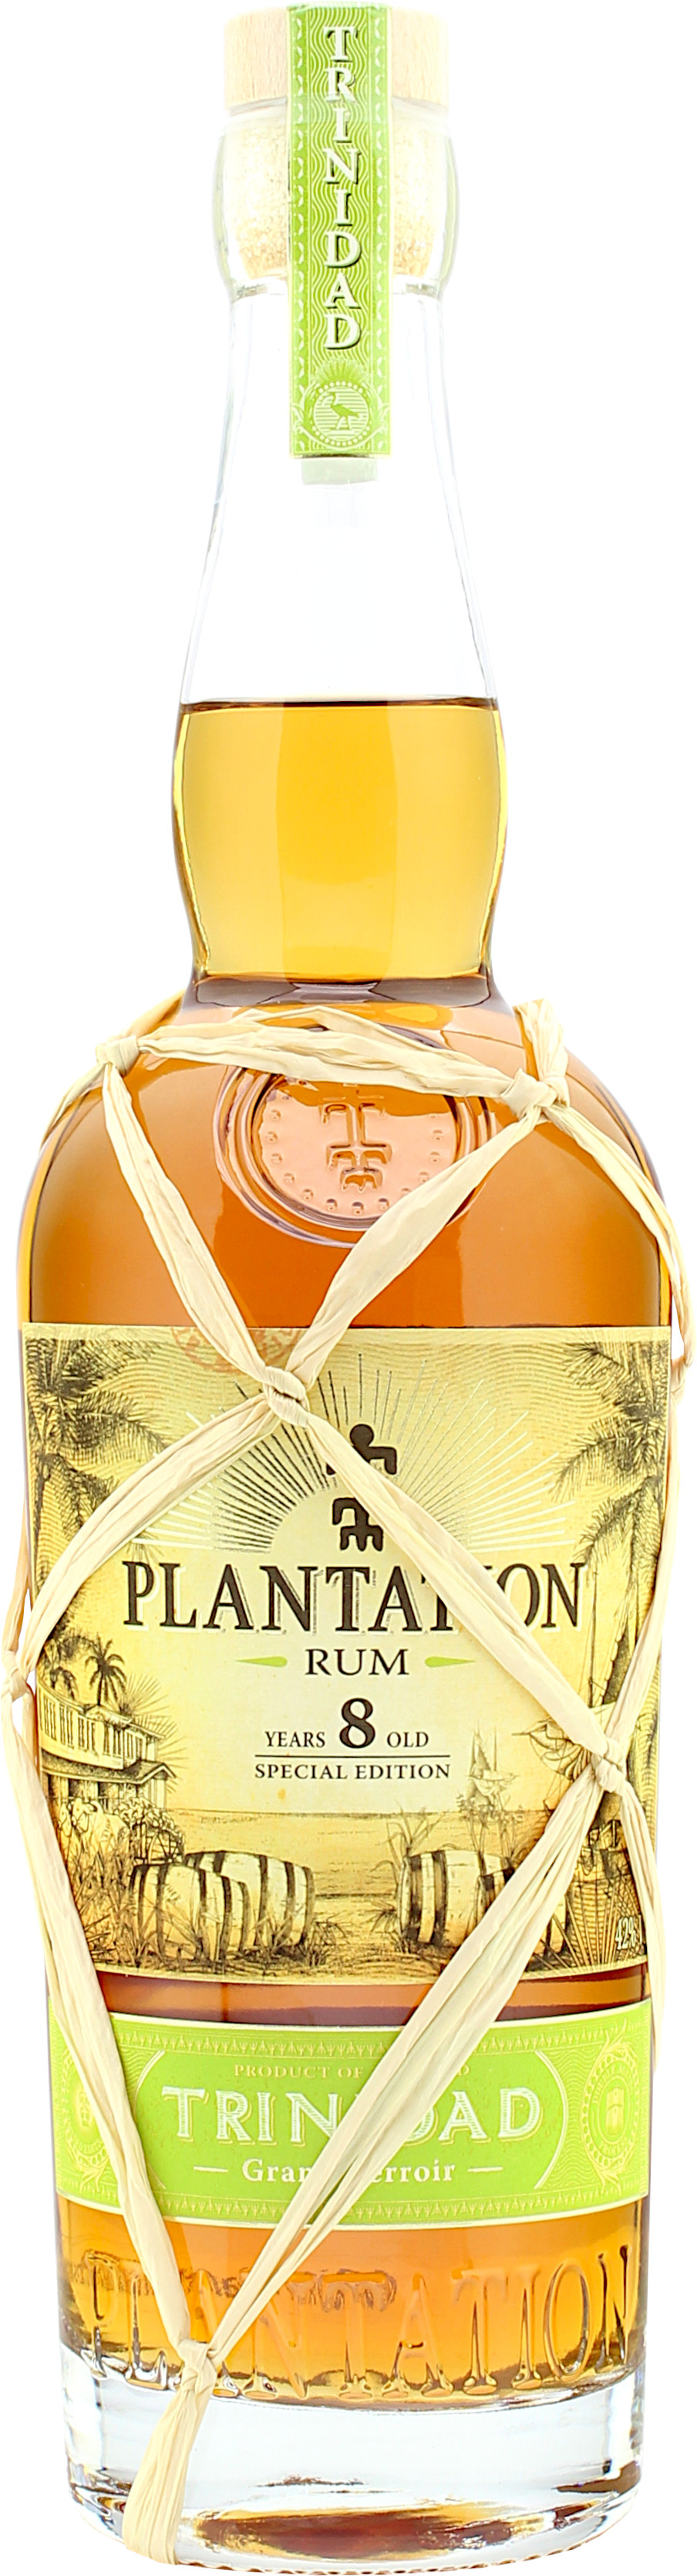 Plantation Rum Trinidad 8 Jahre Special Edition 42.0% 0,7l